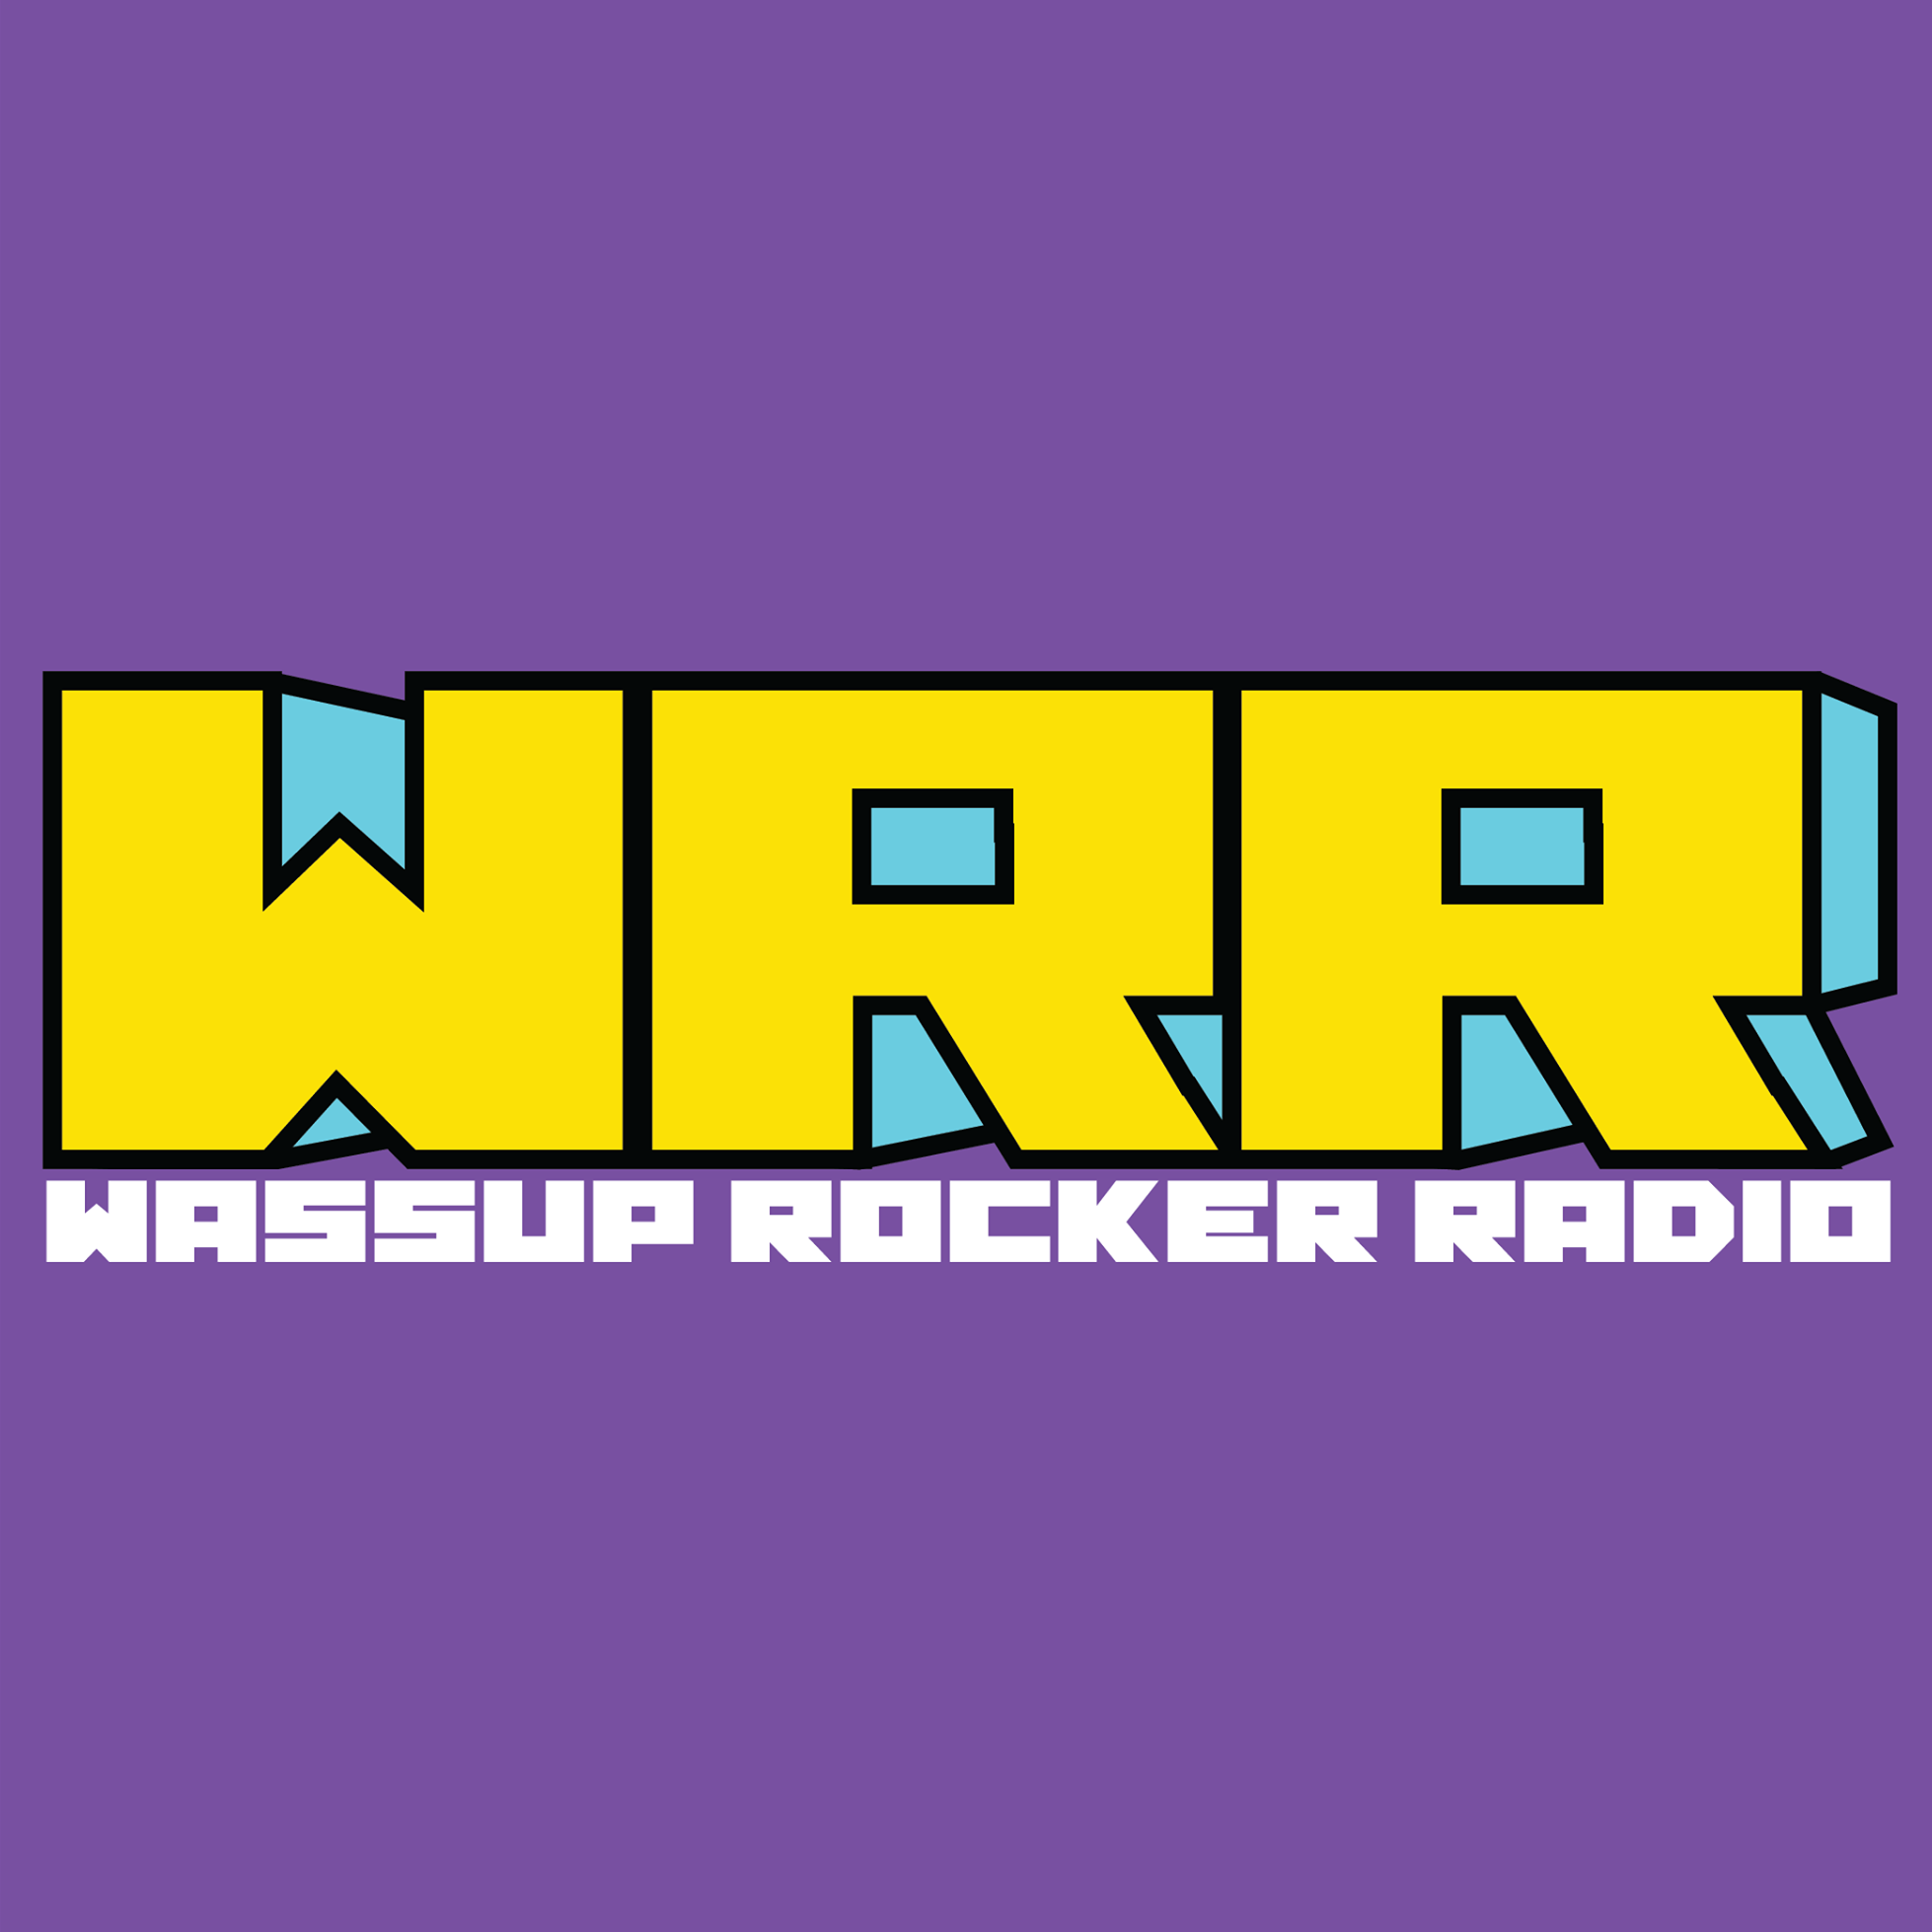 WASSUP ROCKER RADIO